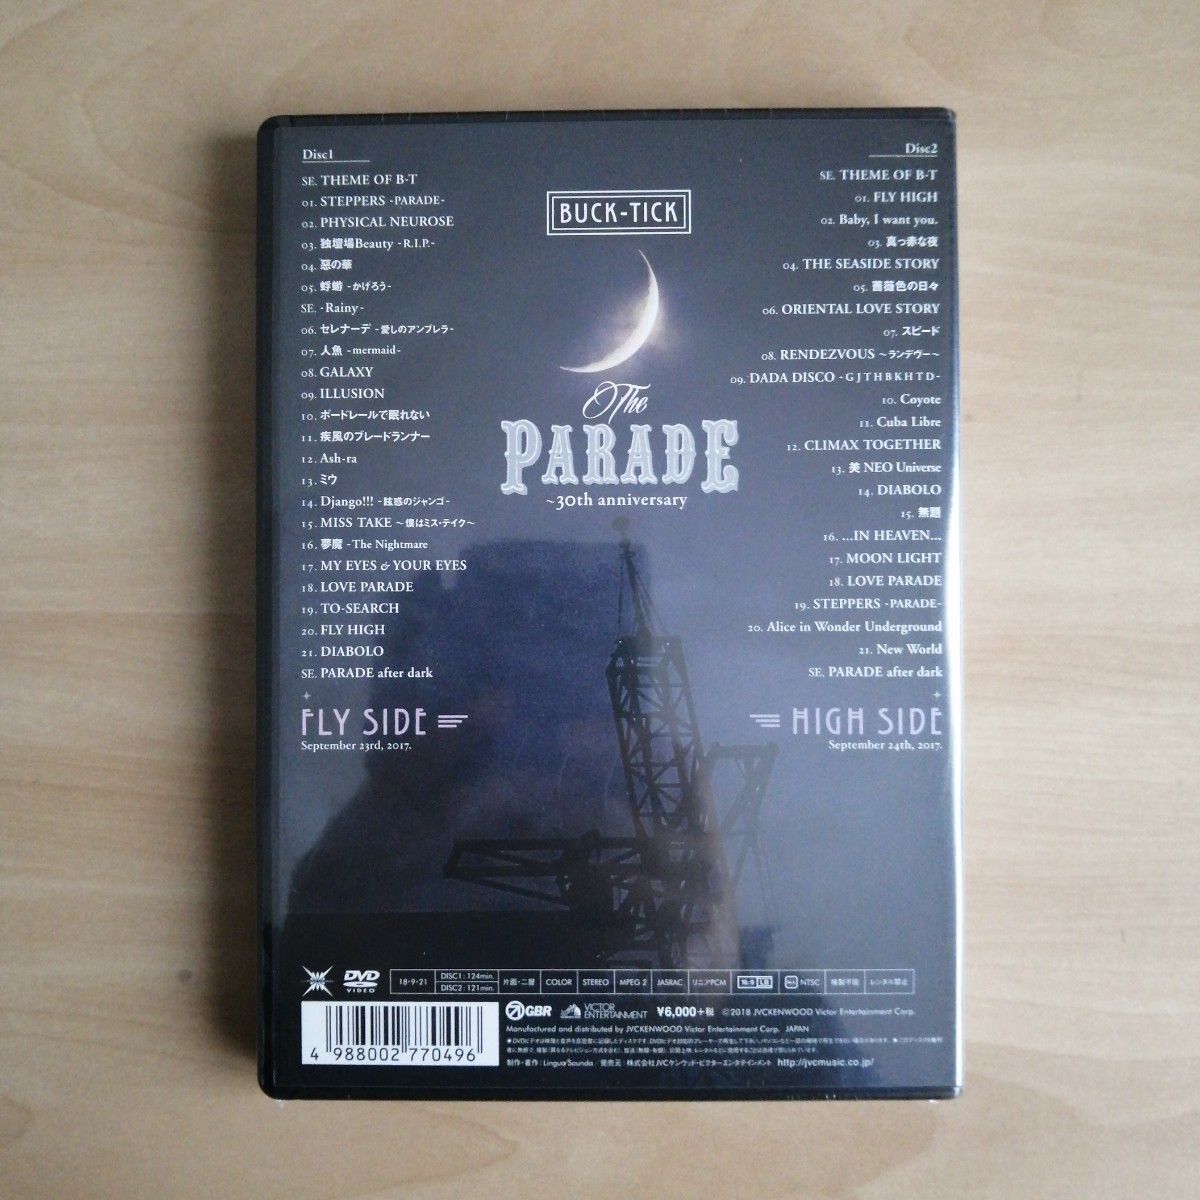 新品未開封★THE PARADE ~30th anniversary~ DVD 通常盤 BUCK-TICK バクチク